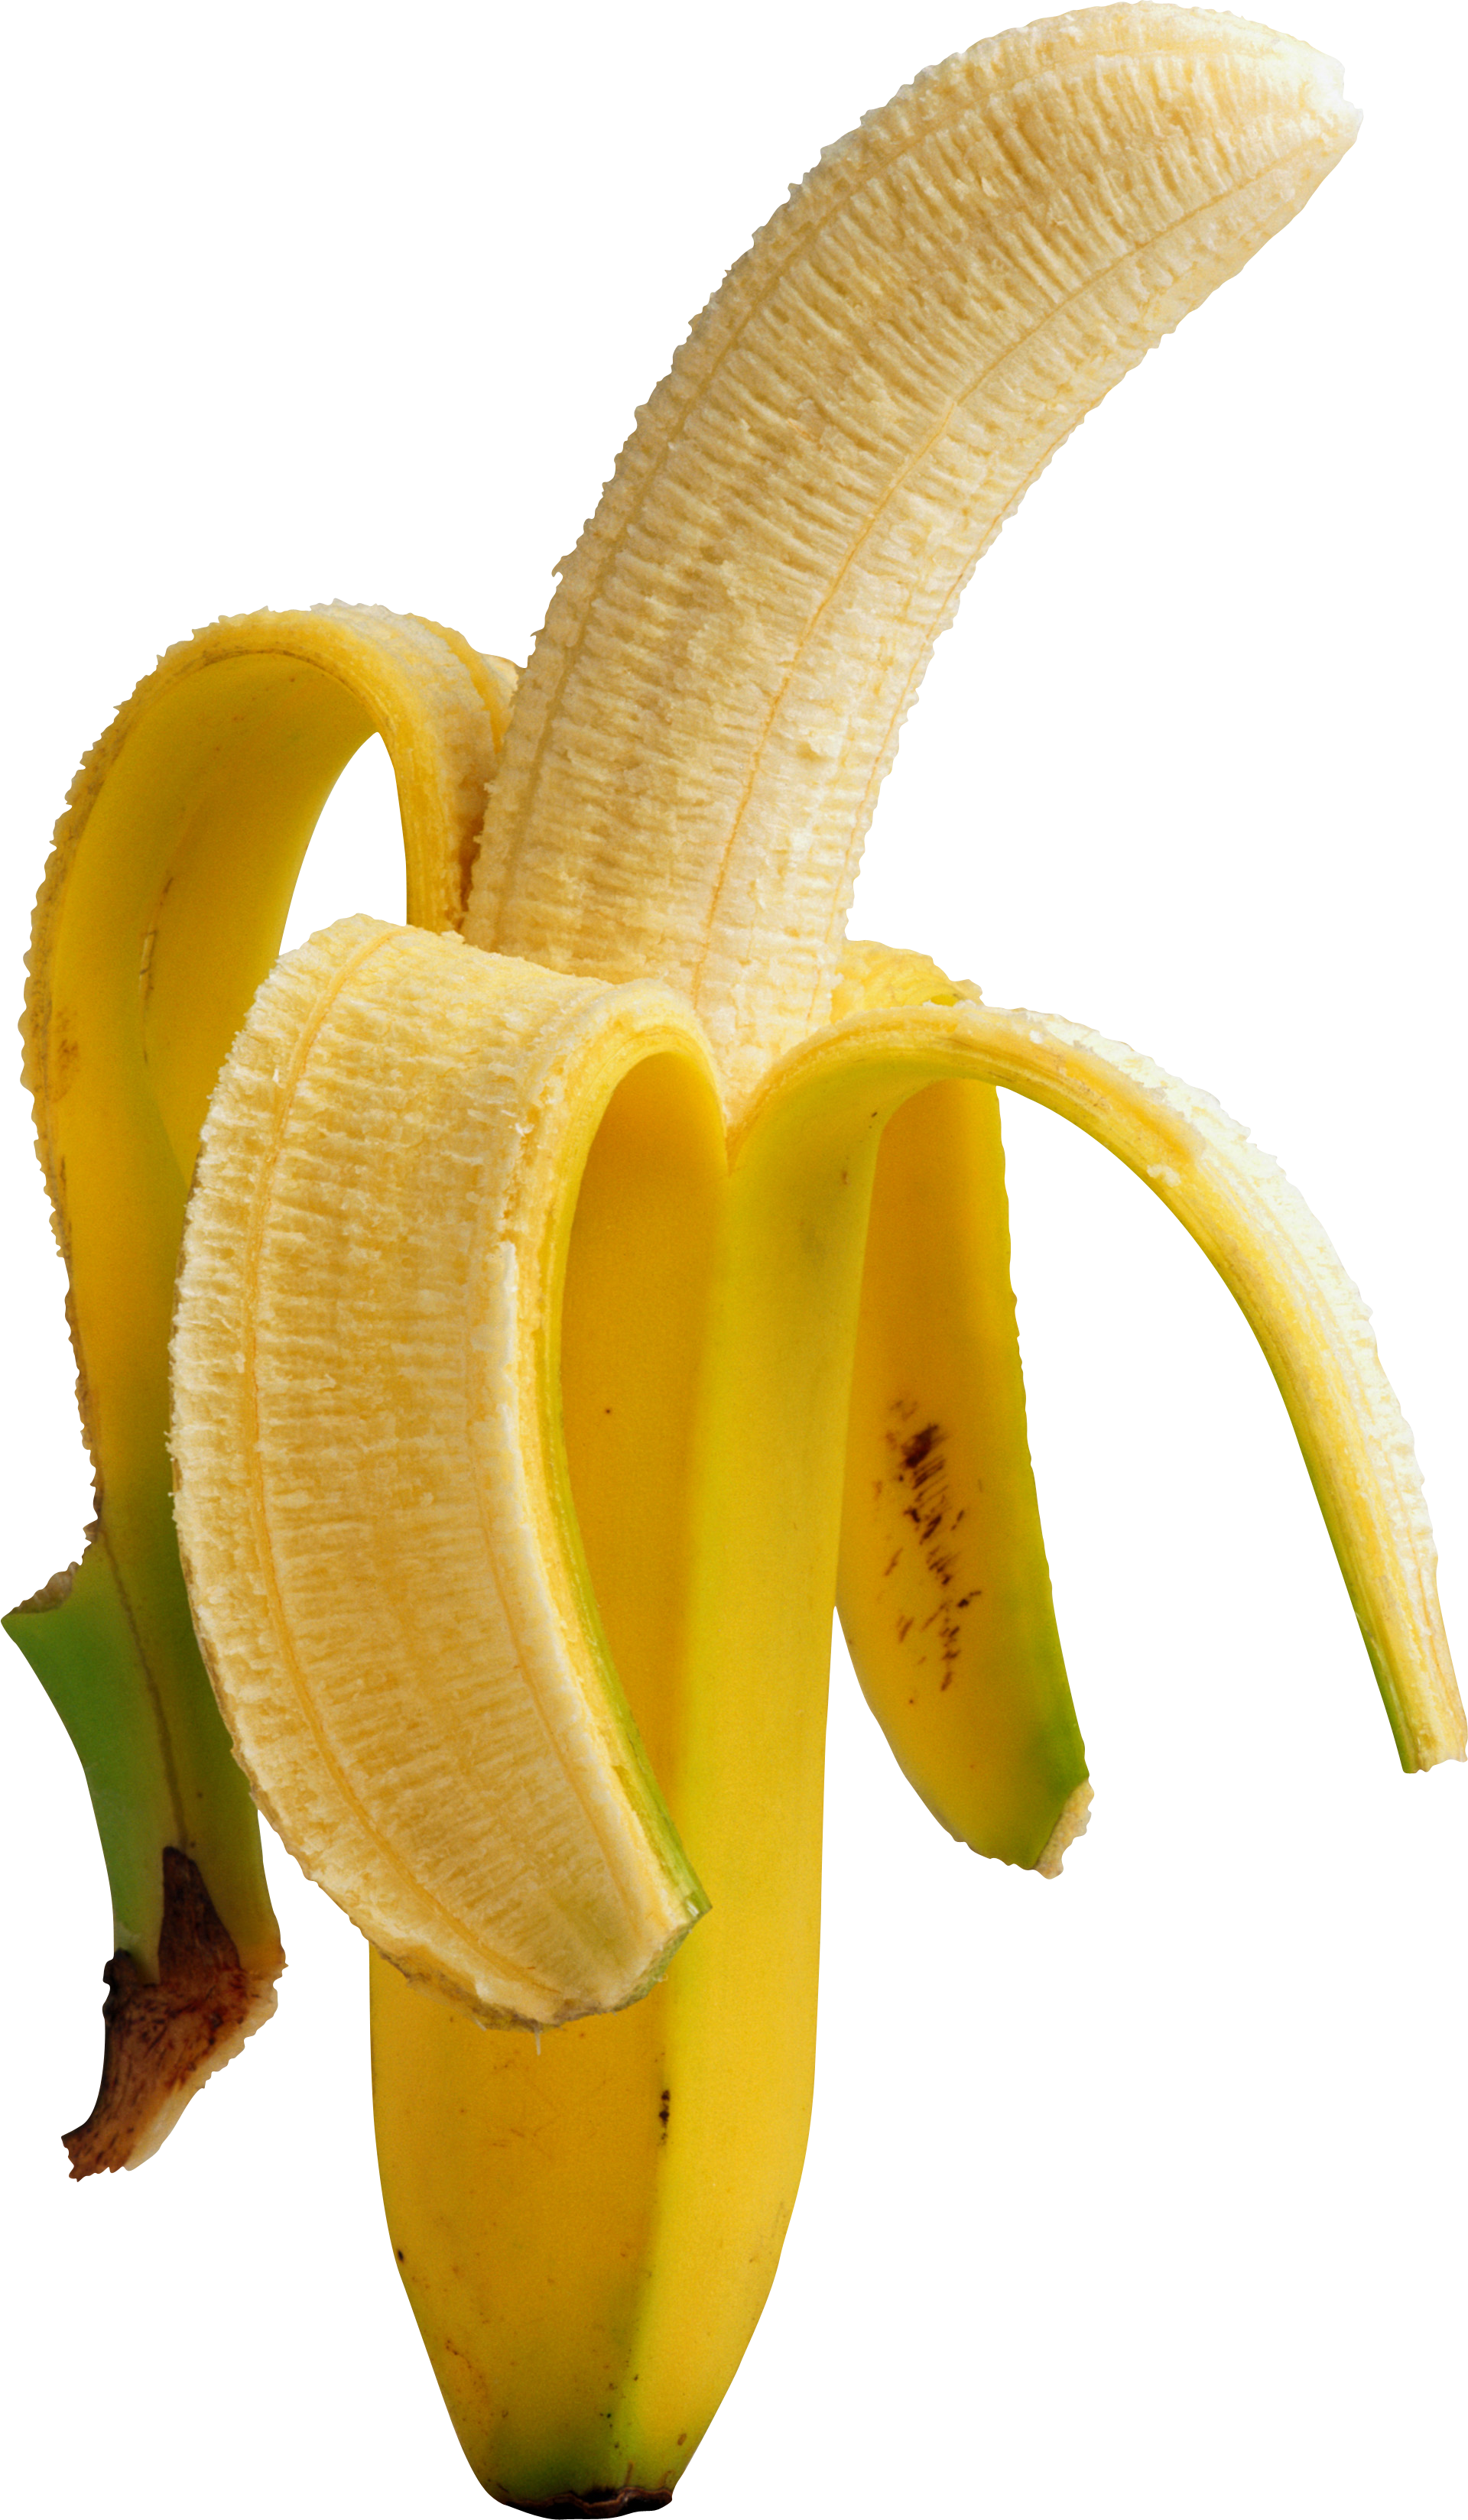 Pealed Banana PNG Image